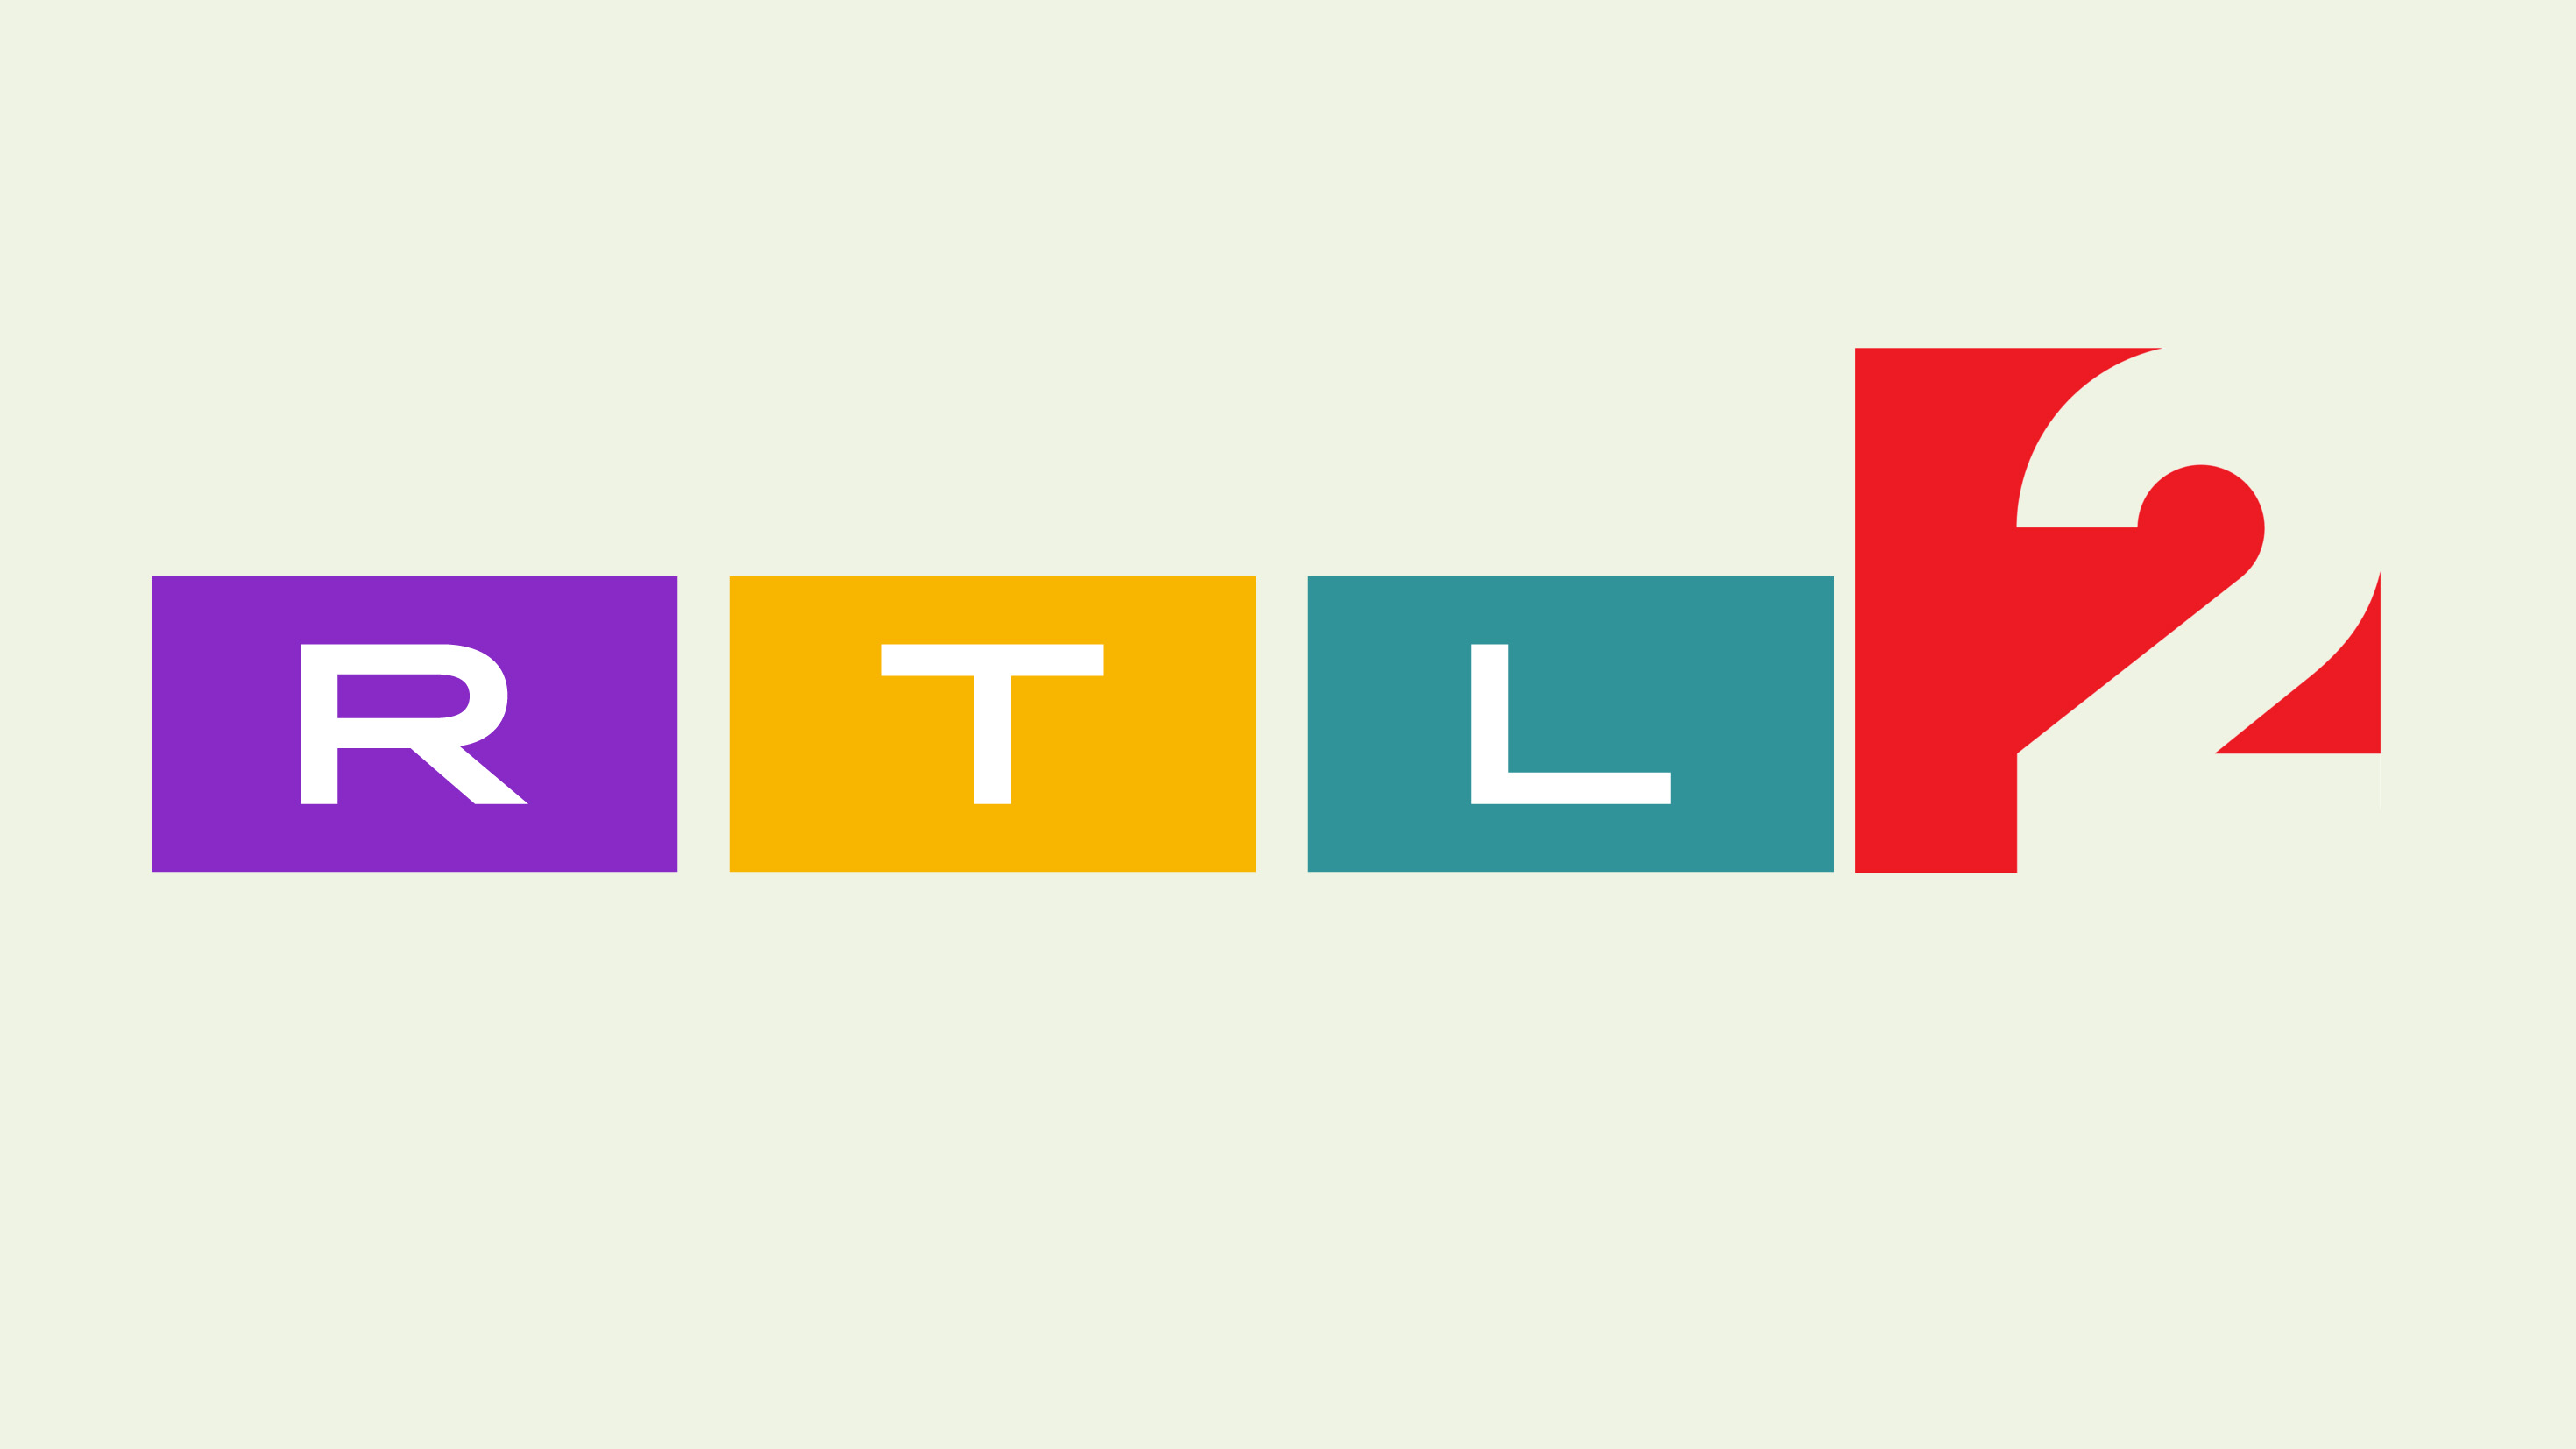 Rendkívüli műsorváltozás jön az RTL-en és a TV2-n is - Blikk